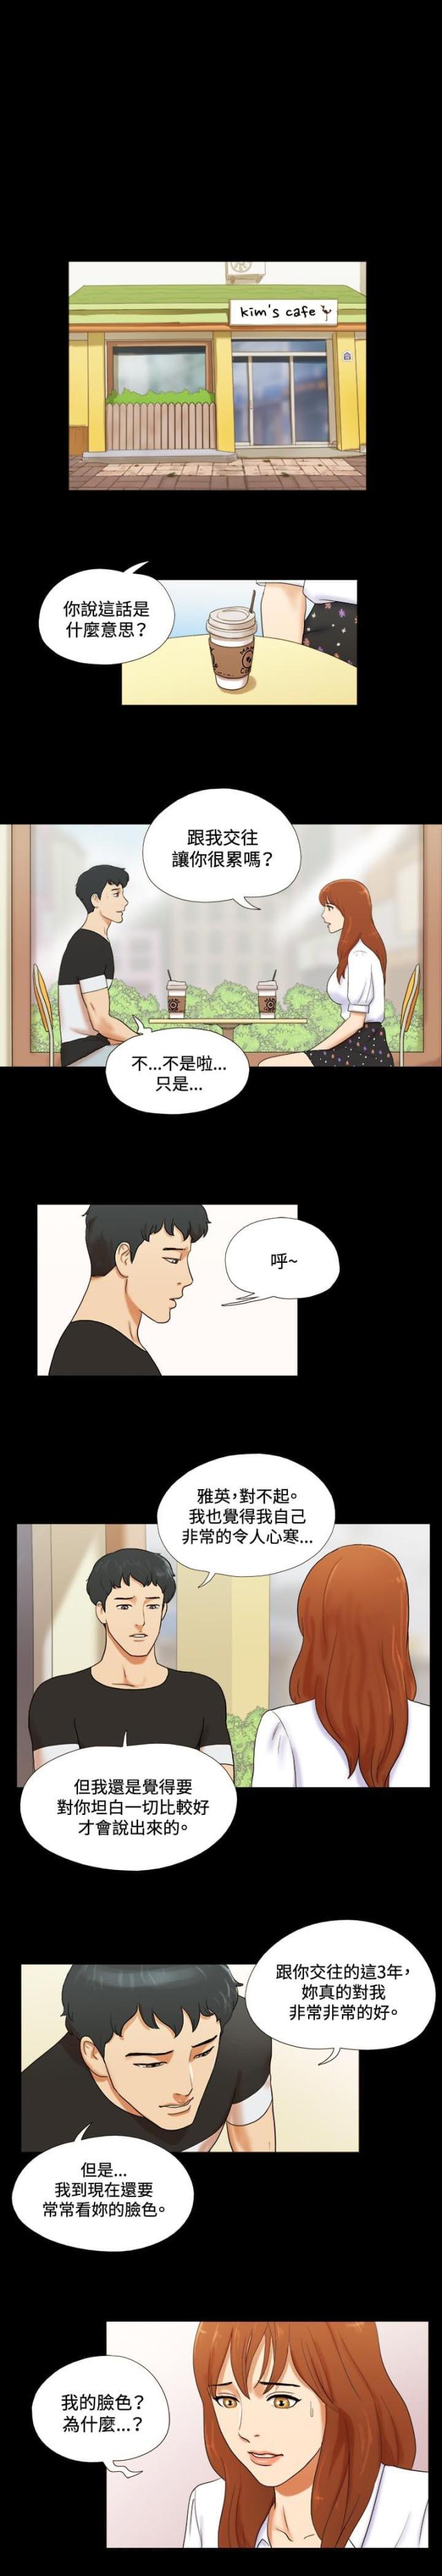 幻想游戏韩国福利漫画多肉资源